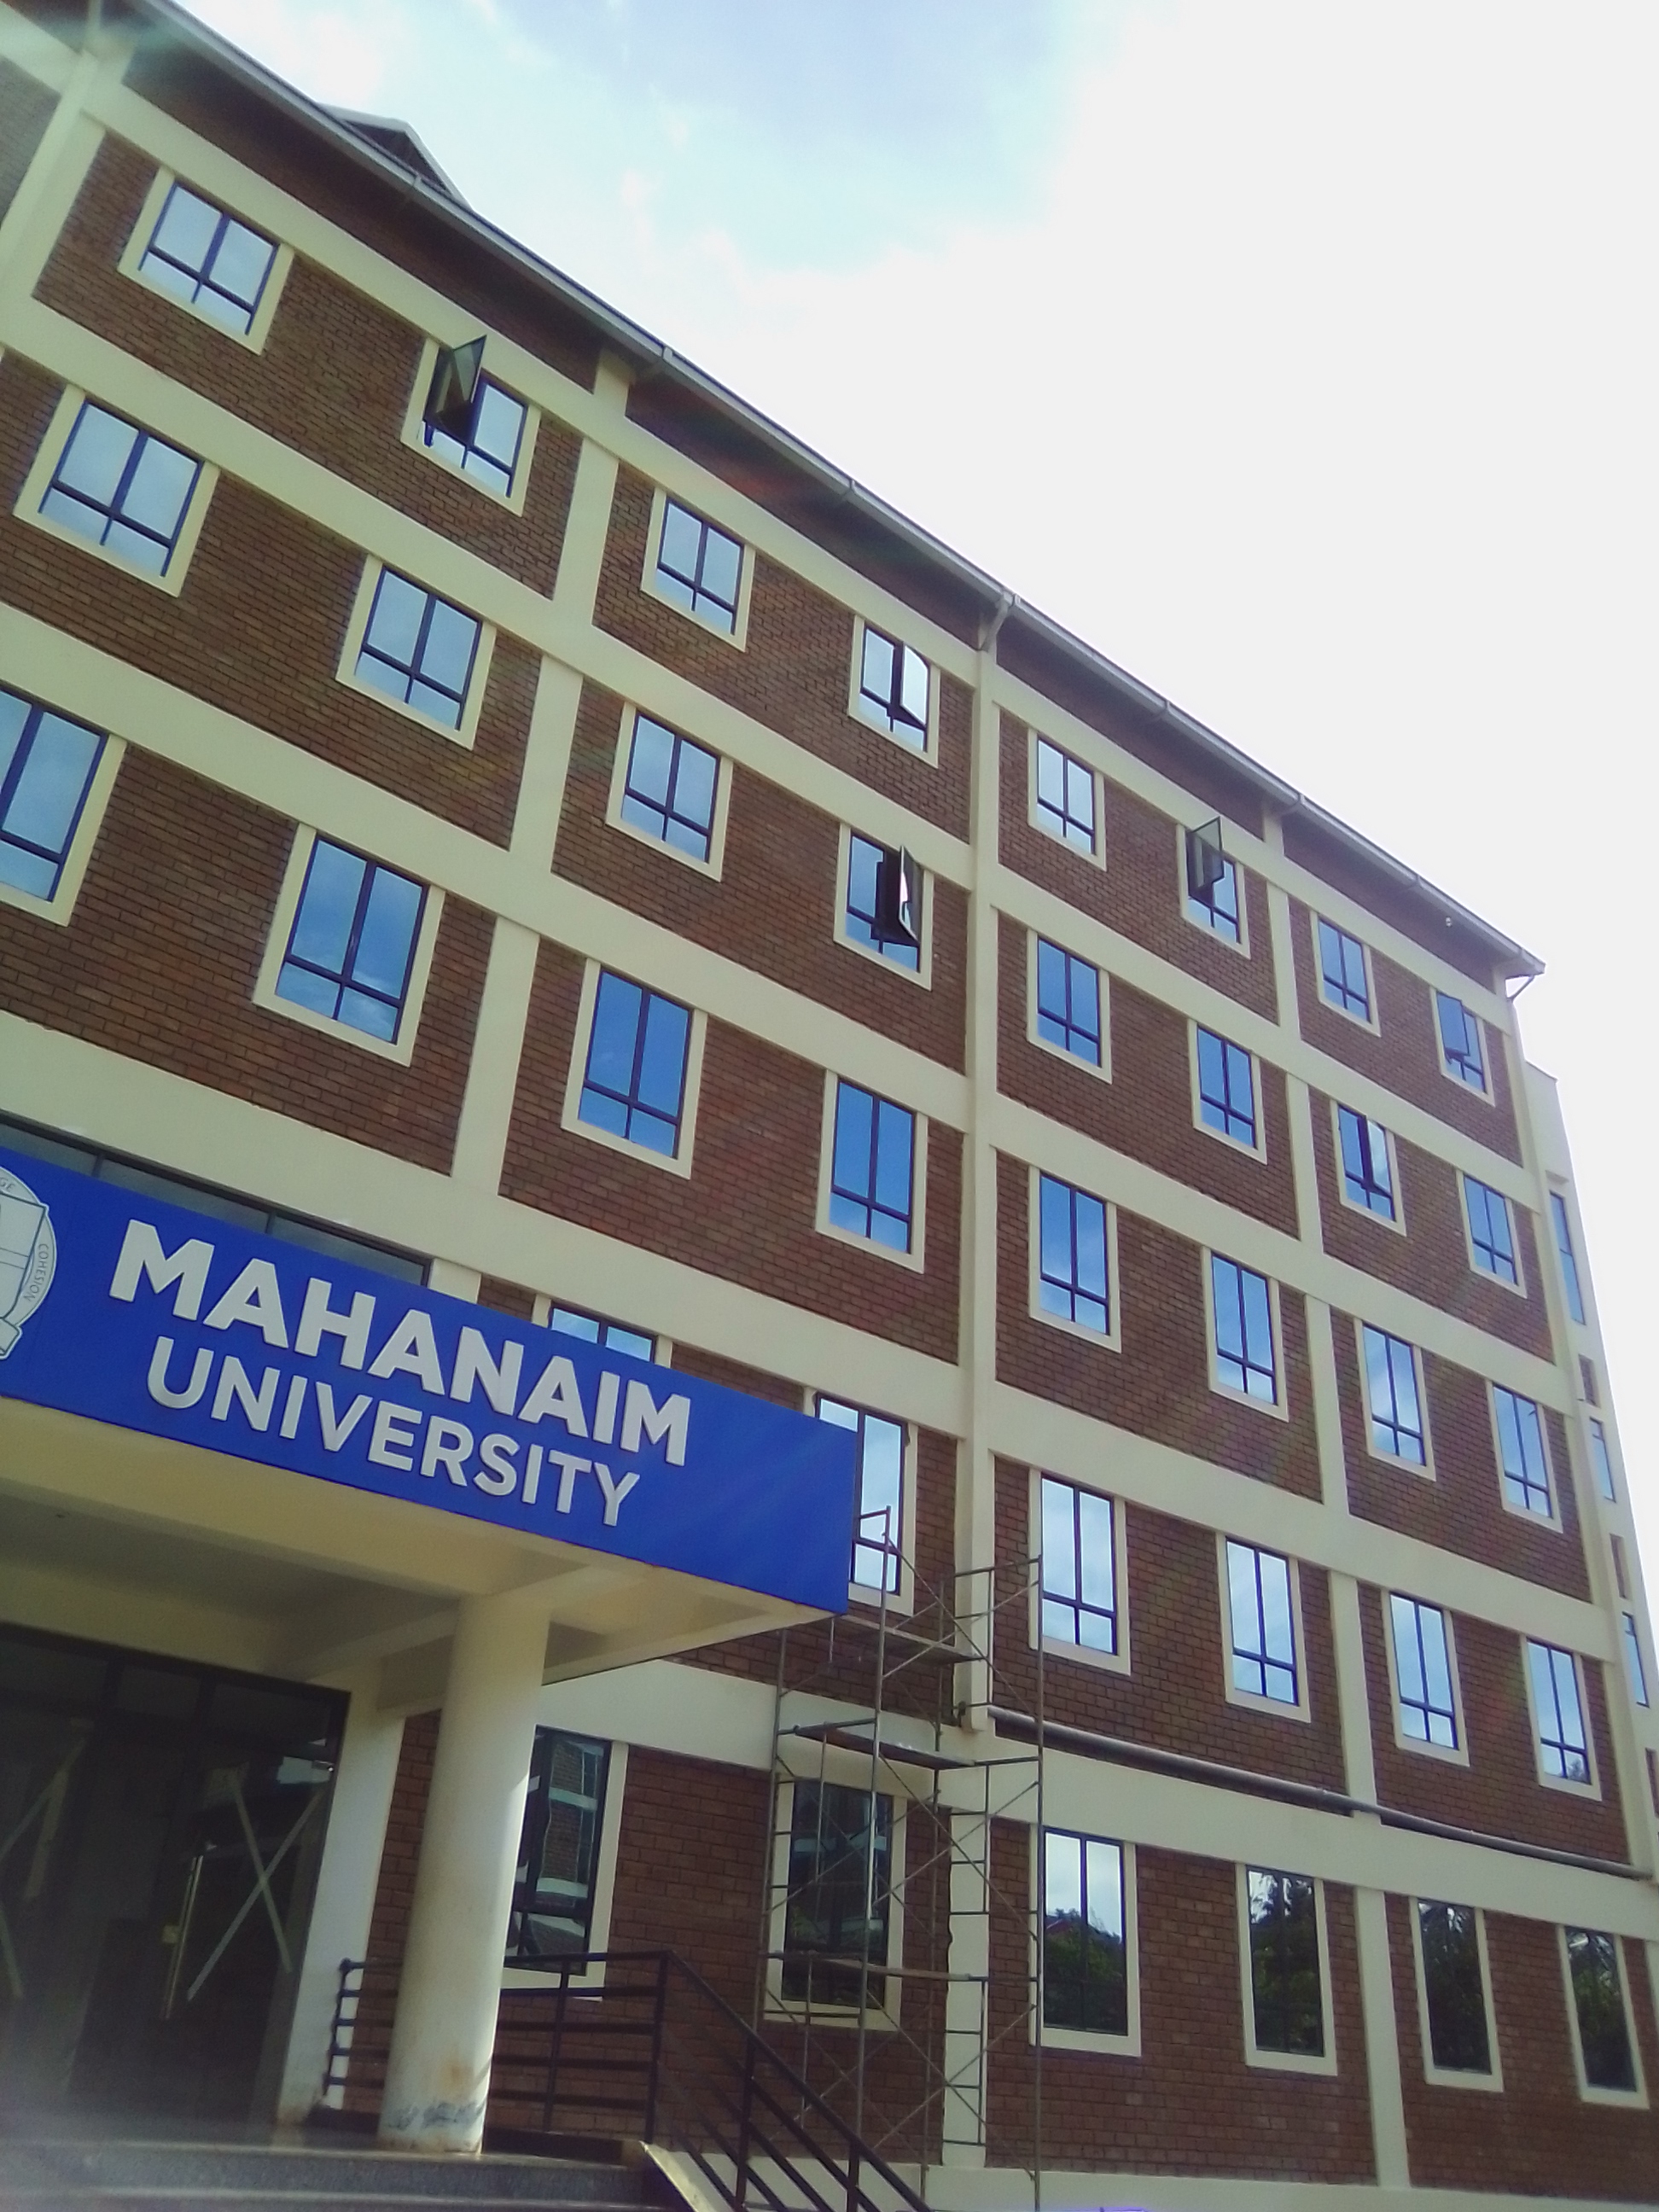 Mahanaim university 